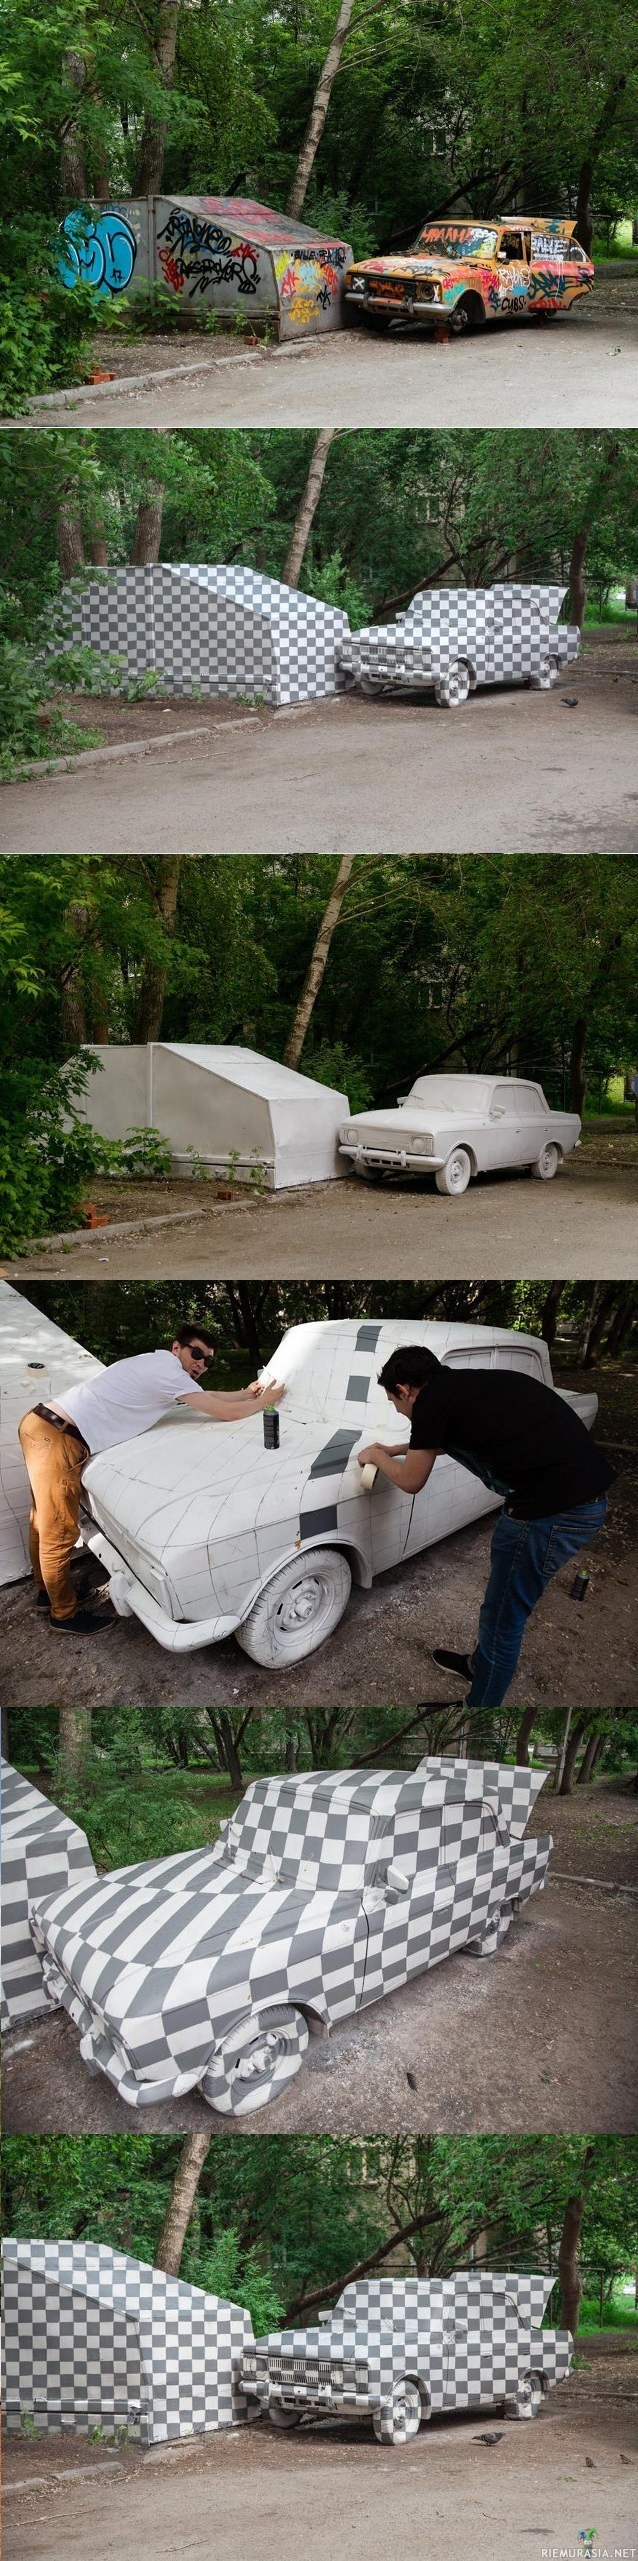 Photoshop taidetta - Venäläiset taiteilijat maalasivat hylätyn auton photoshopmaisesti. Illuusio toimii vain yhdestä suunnasta, mistä tahansa muusta näkökulmasta neliöt eivät enää näytä neliöiltä.